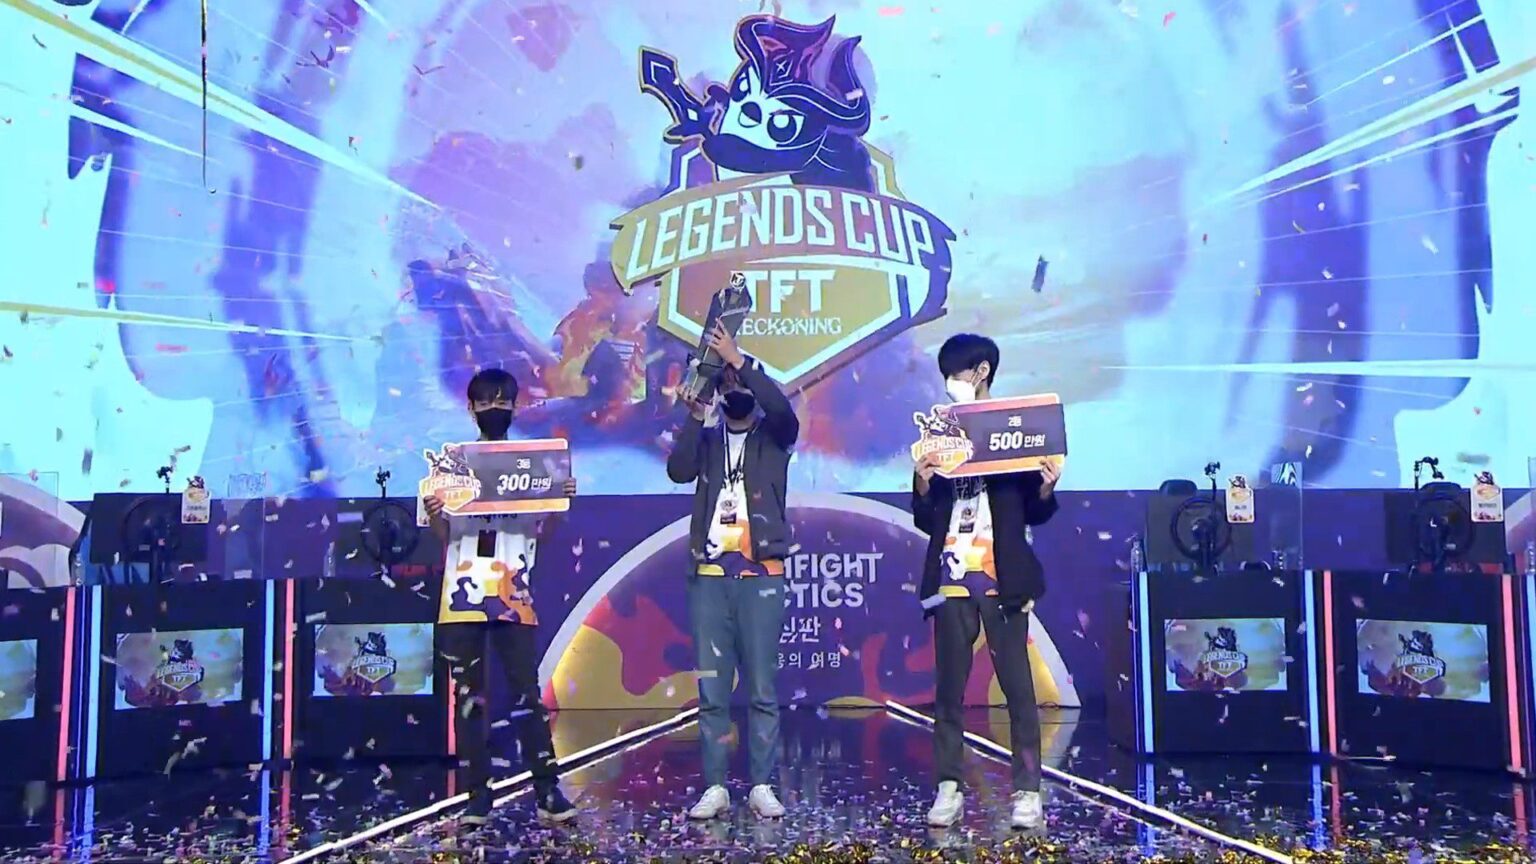 Strongs2xy hụt chức vô địch trong trận Chung kết Legends Cup TFT